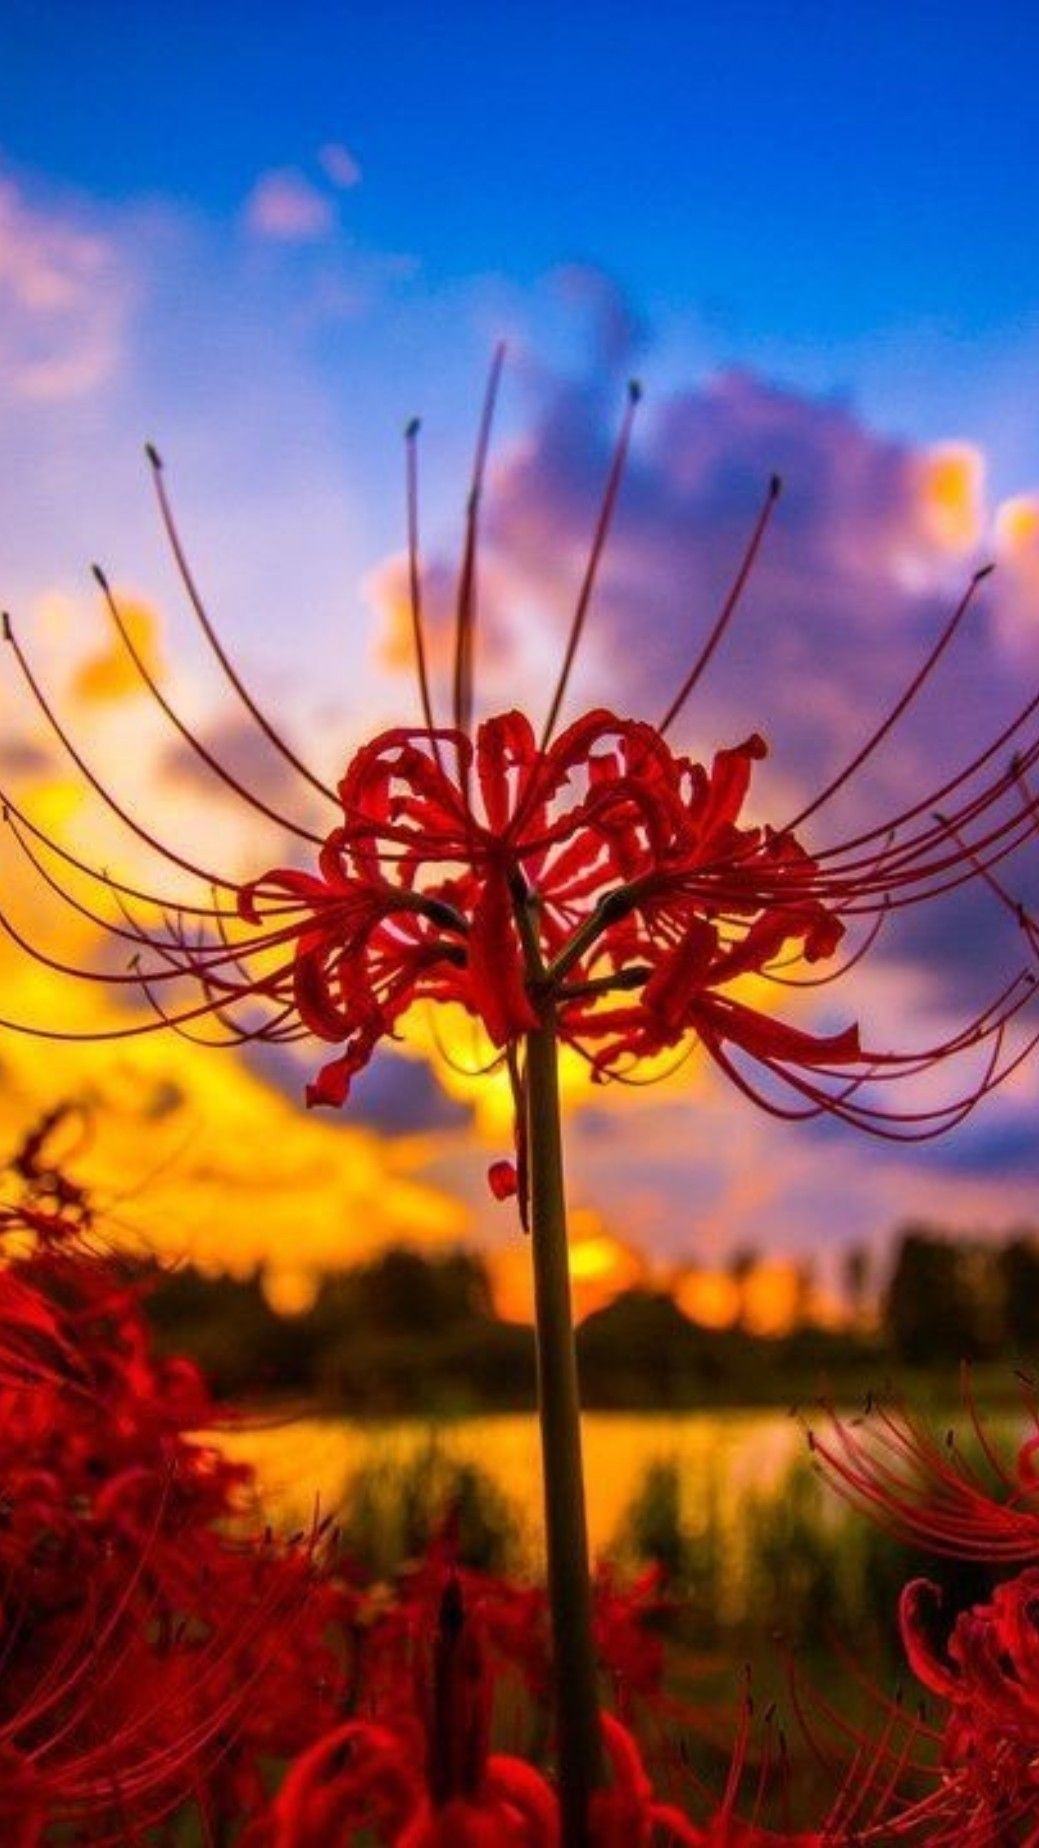 Hình nền hoa bỉ ngạn đẹp trong nắng chiều cho điện thoại